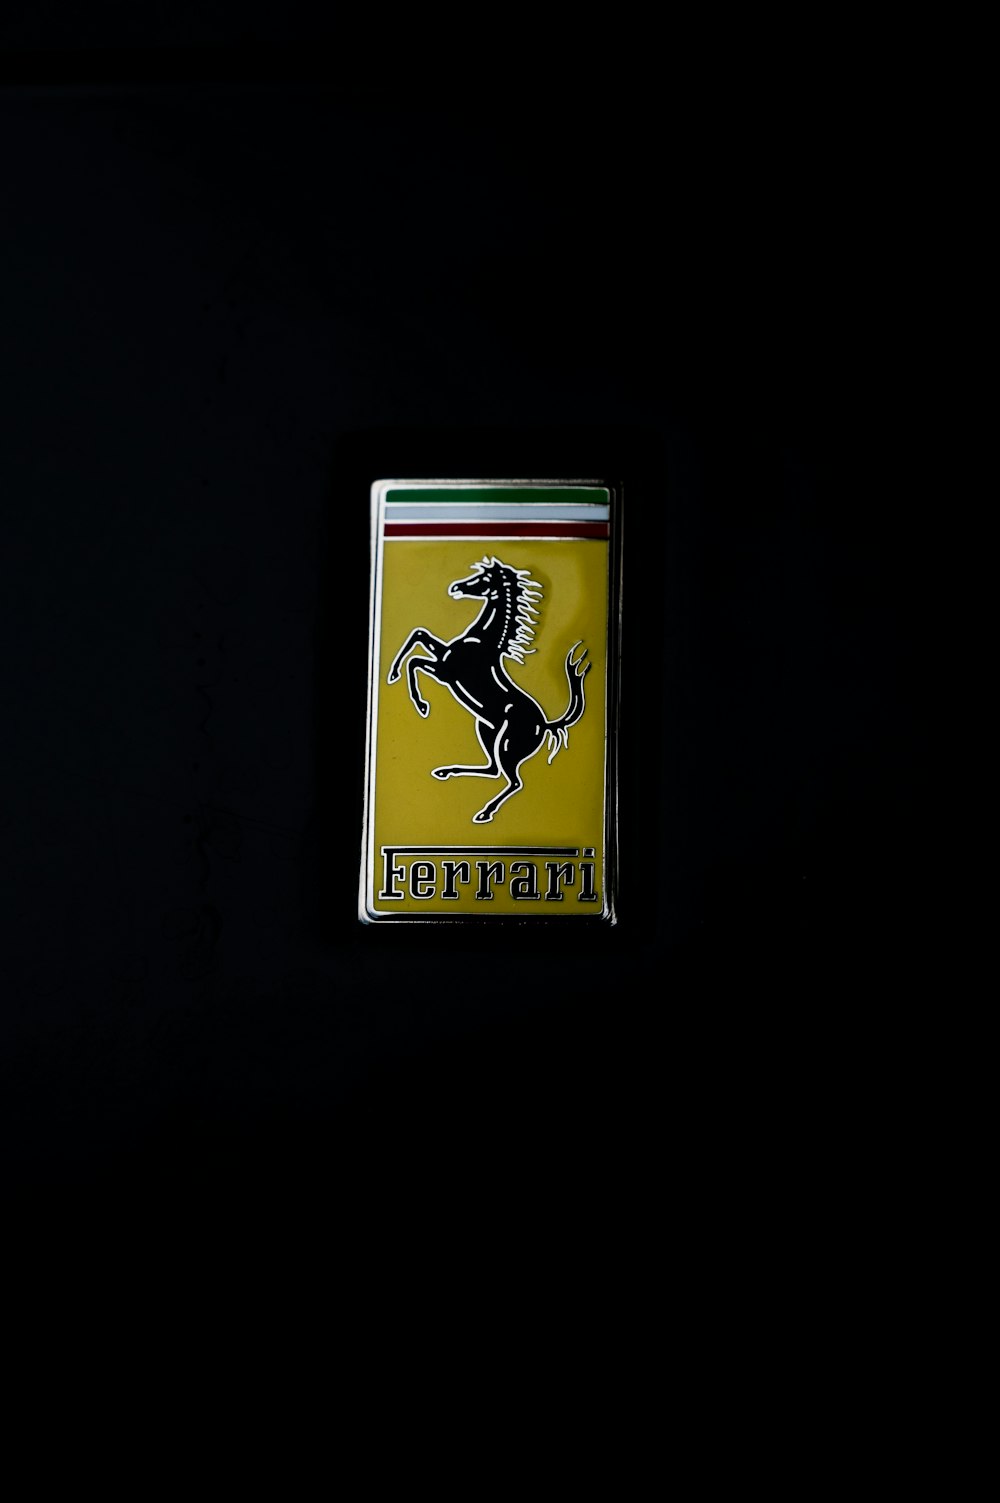 a ferrari emblem on a black background